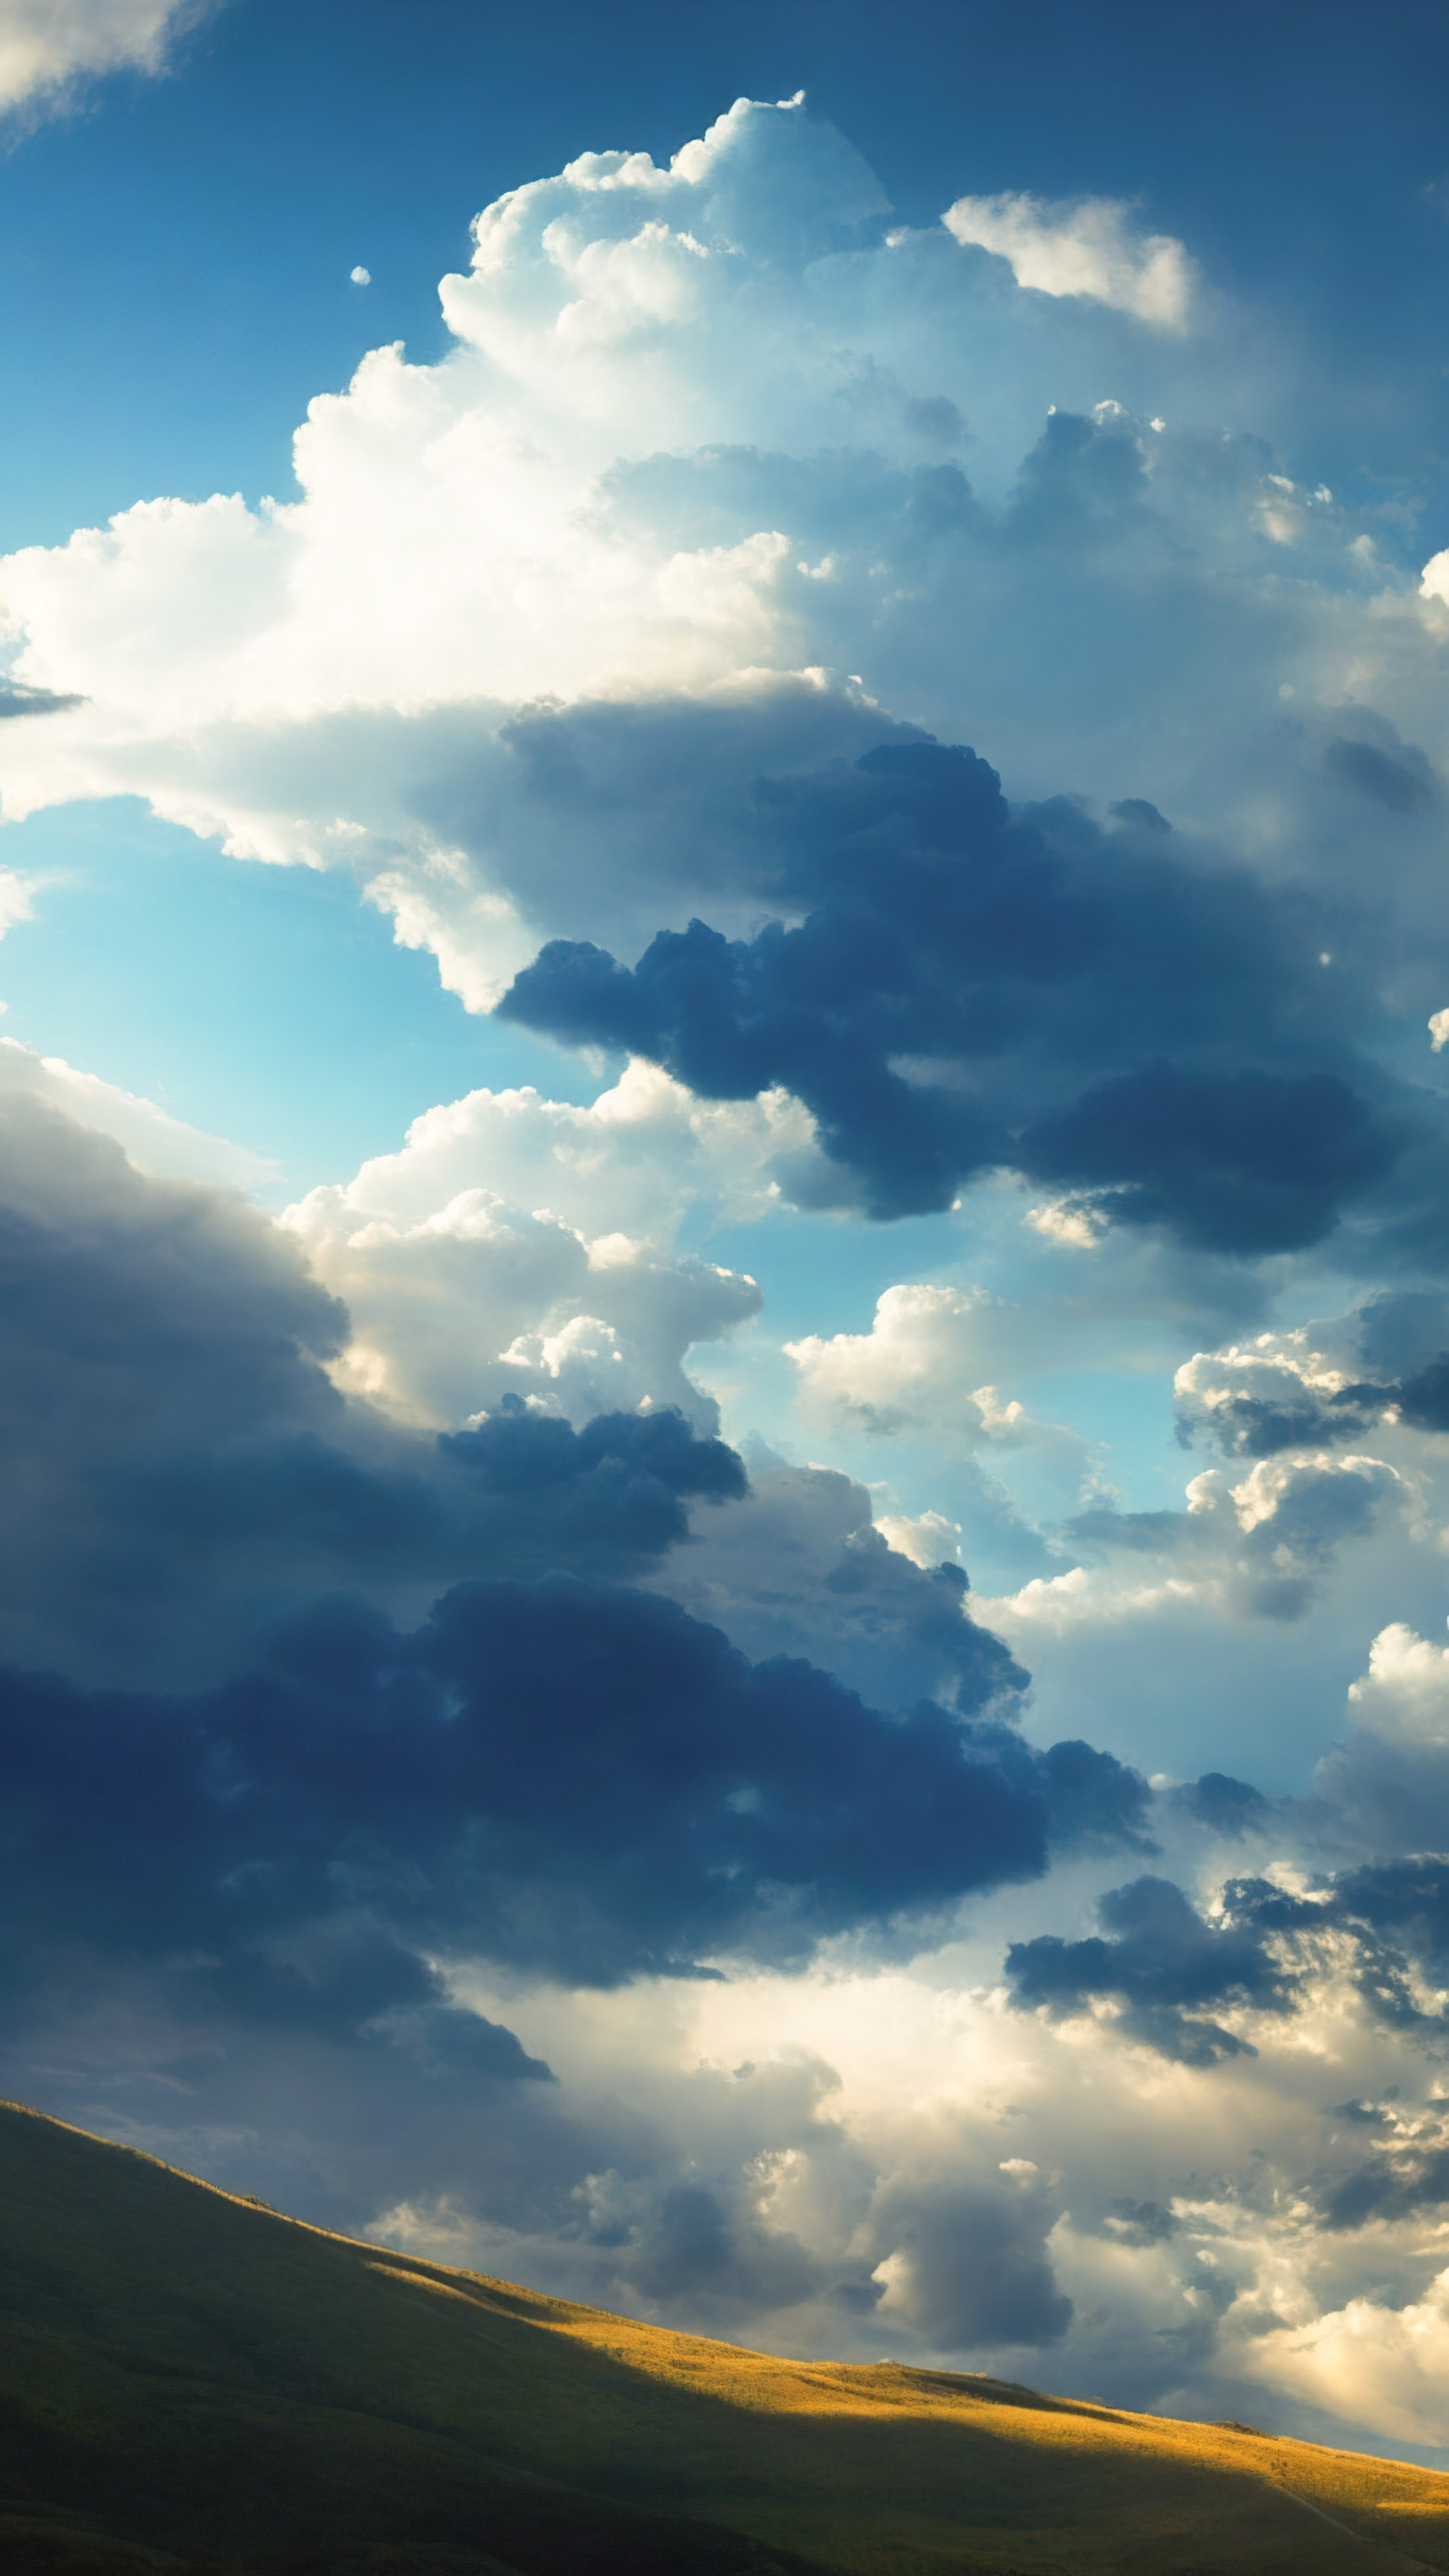 Découvrez le drame de notre fond d'écran de ciel céleste, présentant un ciel dramatique rempli de nuages cumulonimbus imposants projetant des ombres sur une vallée ensoleillée.